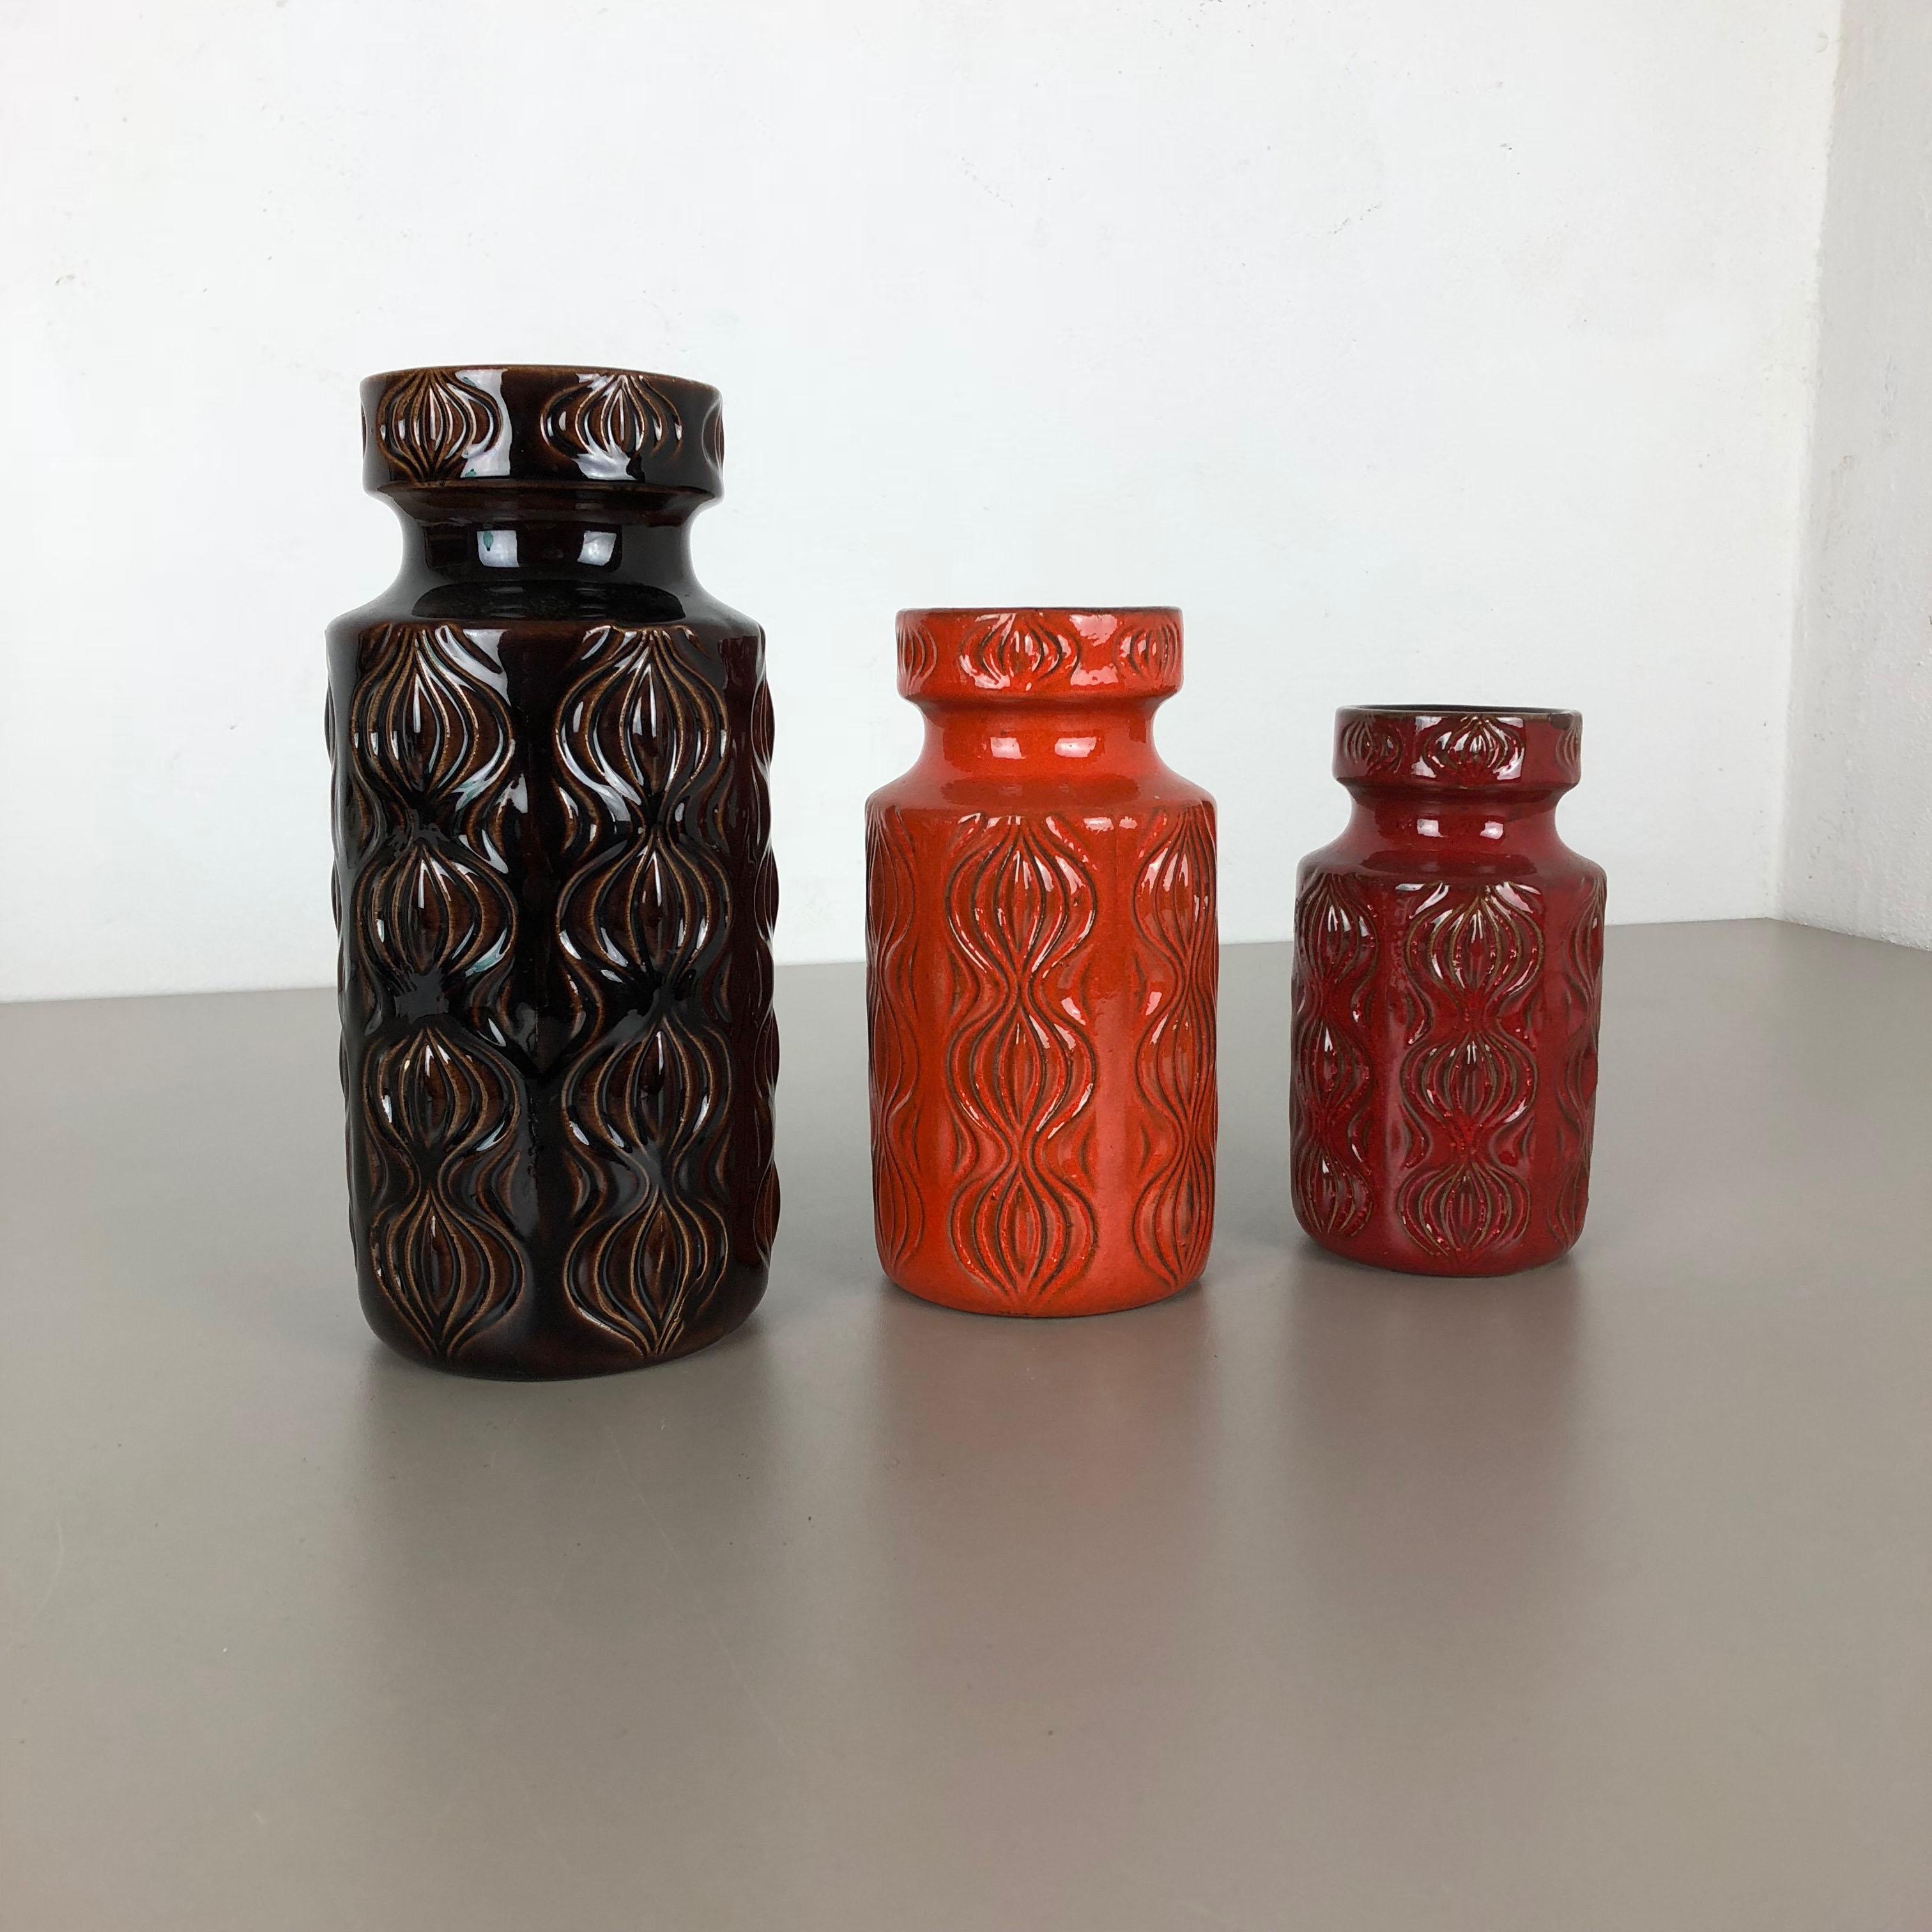 Artikel:

Set aus zwei fetten Lavakunstvasen

Modell: Zwiebel

Produzent:

Scheurich, Deutschland



Jahrzehnt:

1970er




Diese originalen Vintage-Vasen wurden in den 1970er Jahren in Deutschland hergestellt. Sie ist aus Keramik